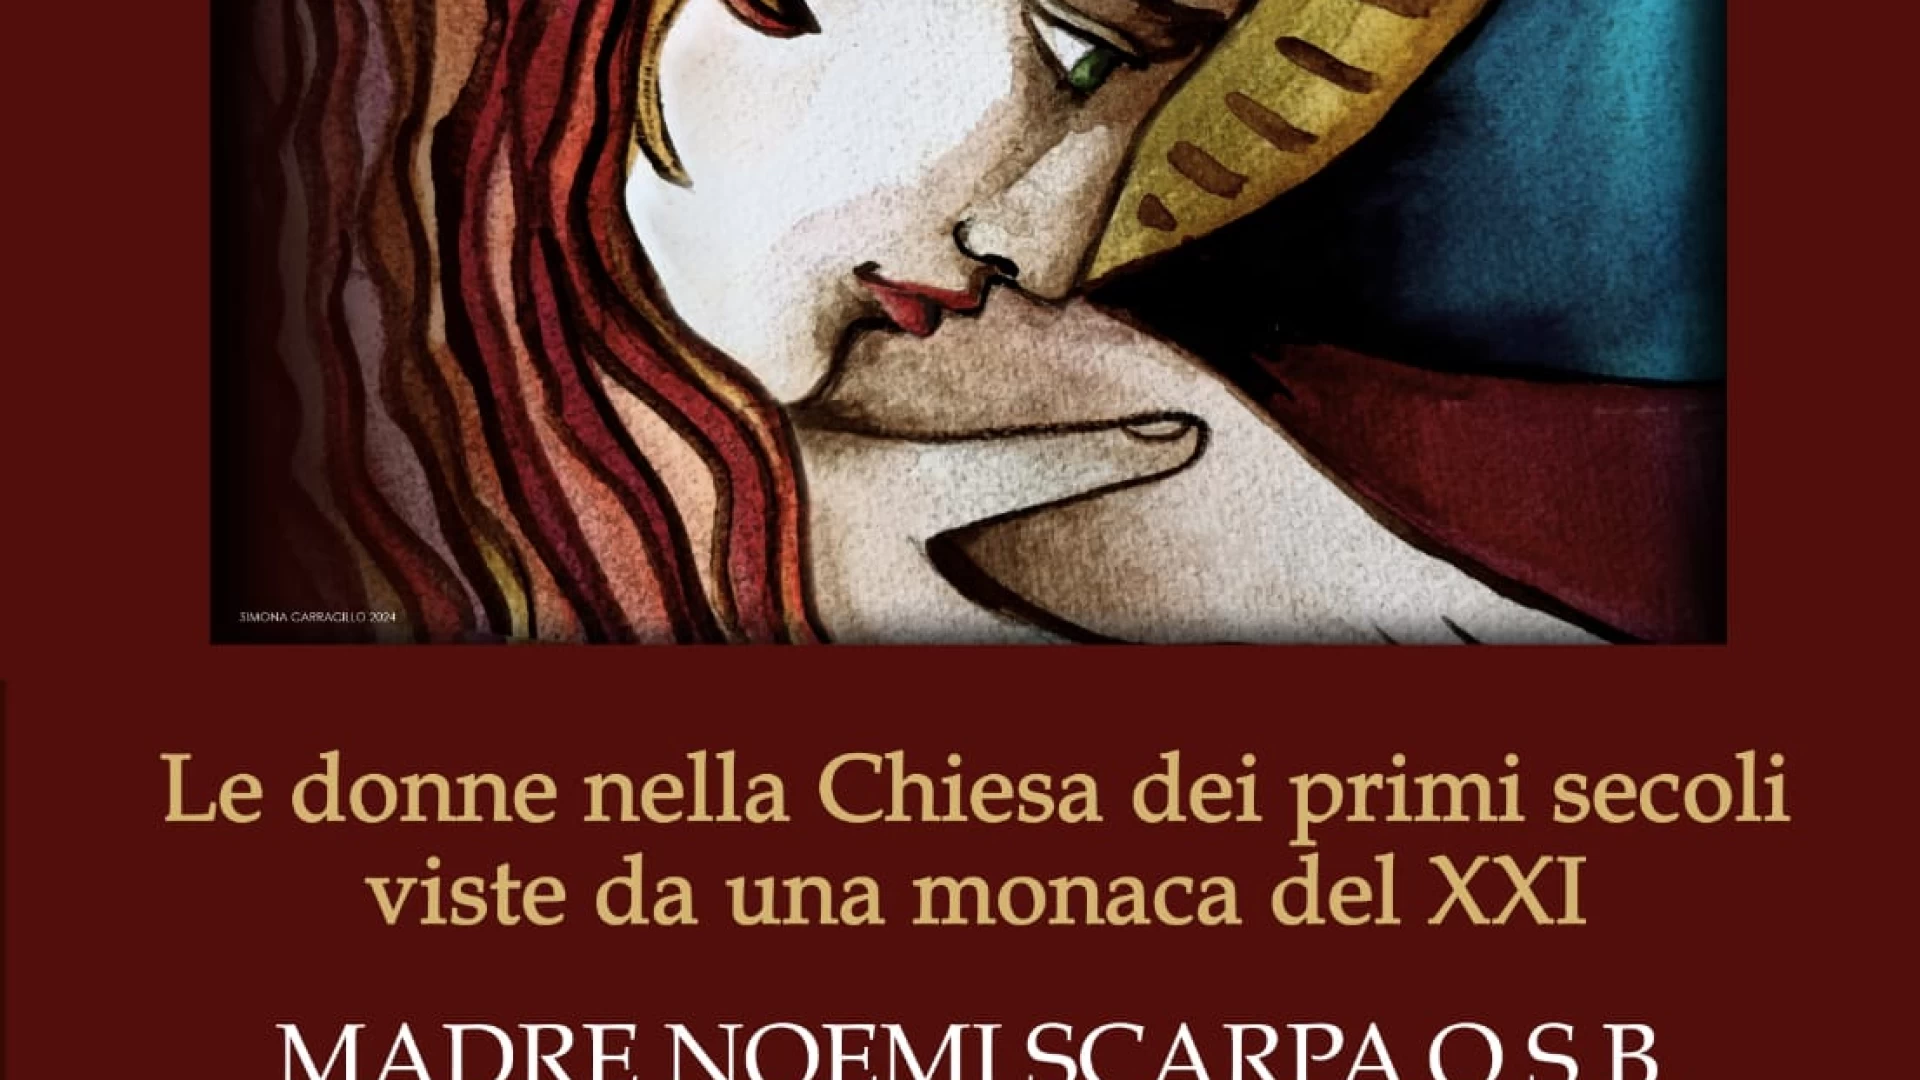 Le donne nella chiesa viste slda una monaca. L'esperienza di Madre Noemi Scarpa. Il 28 aprile l'incontro presso l'Abbazia di San Vincenzo al Volturno.